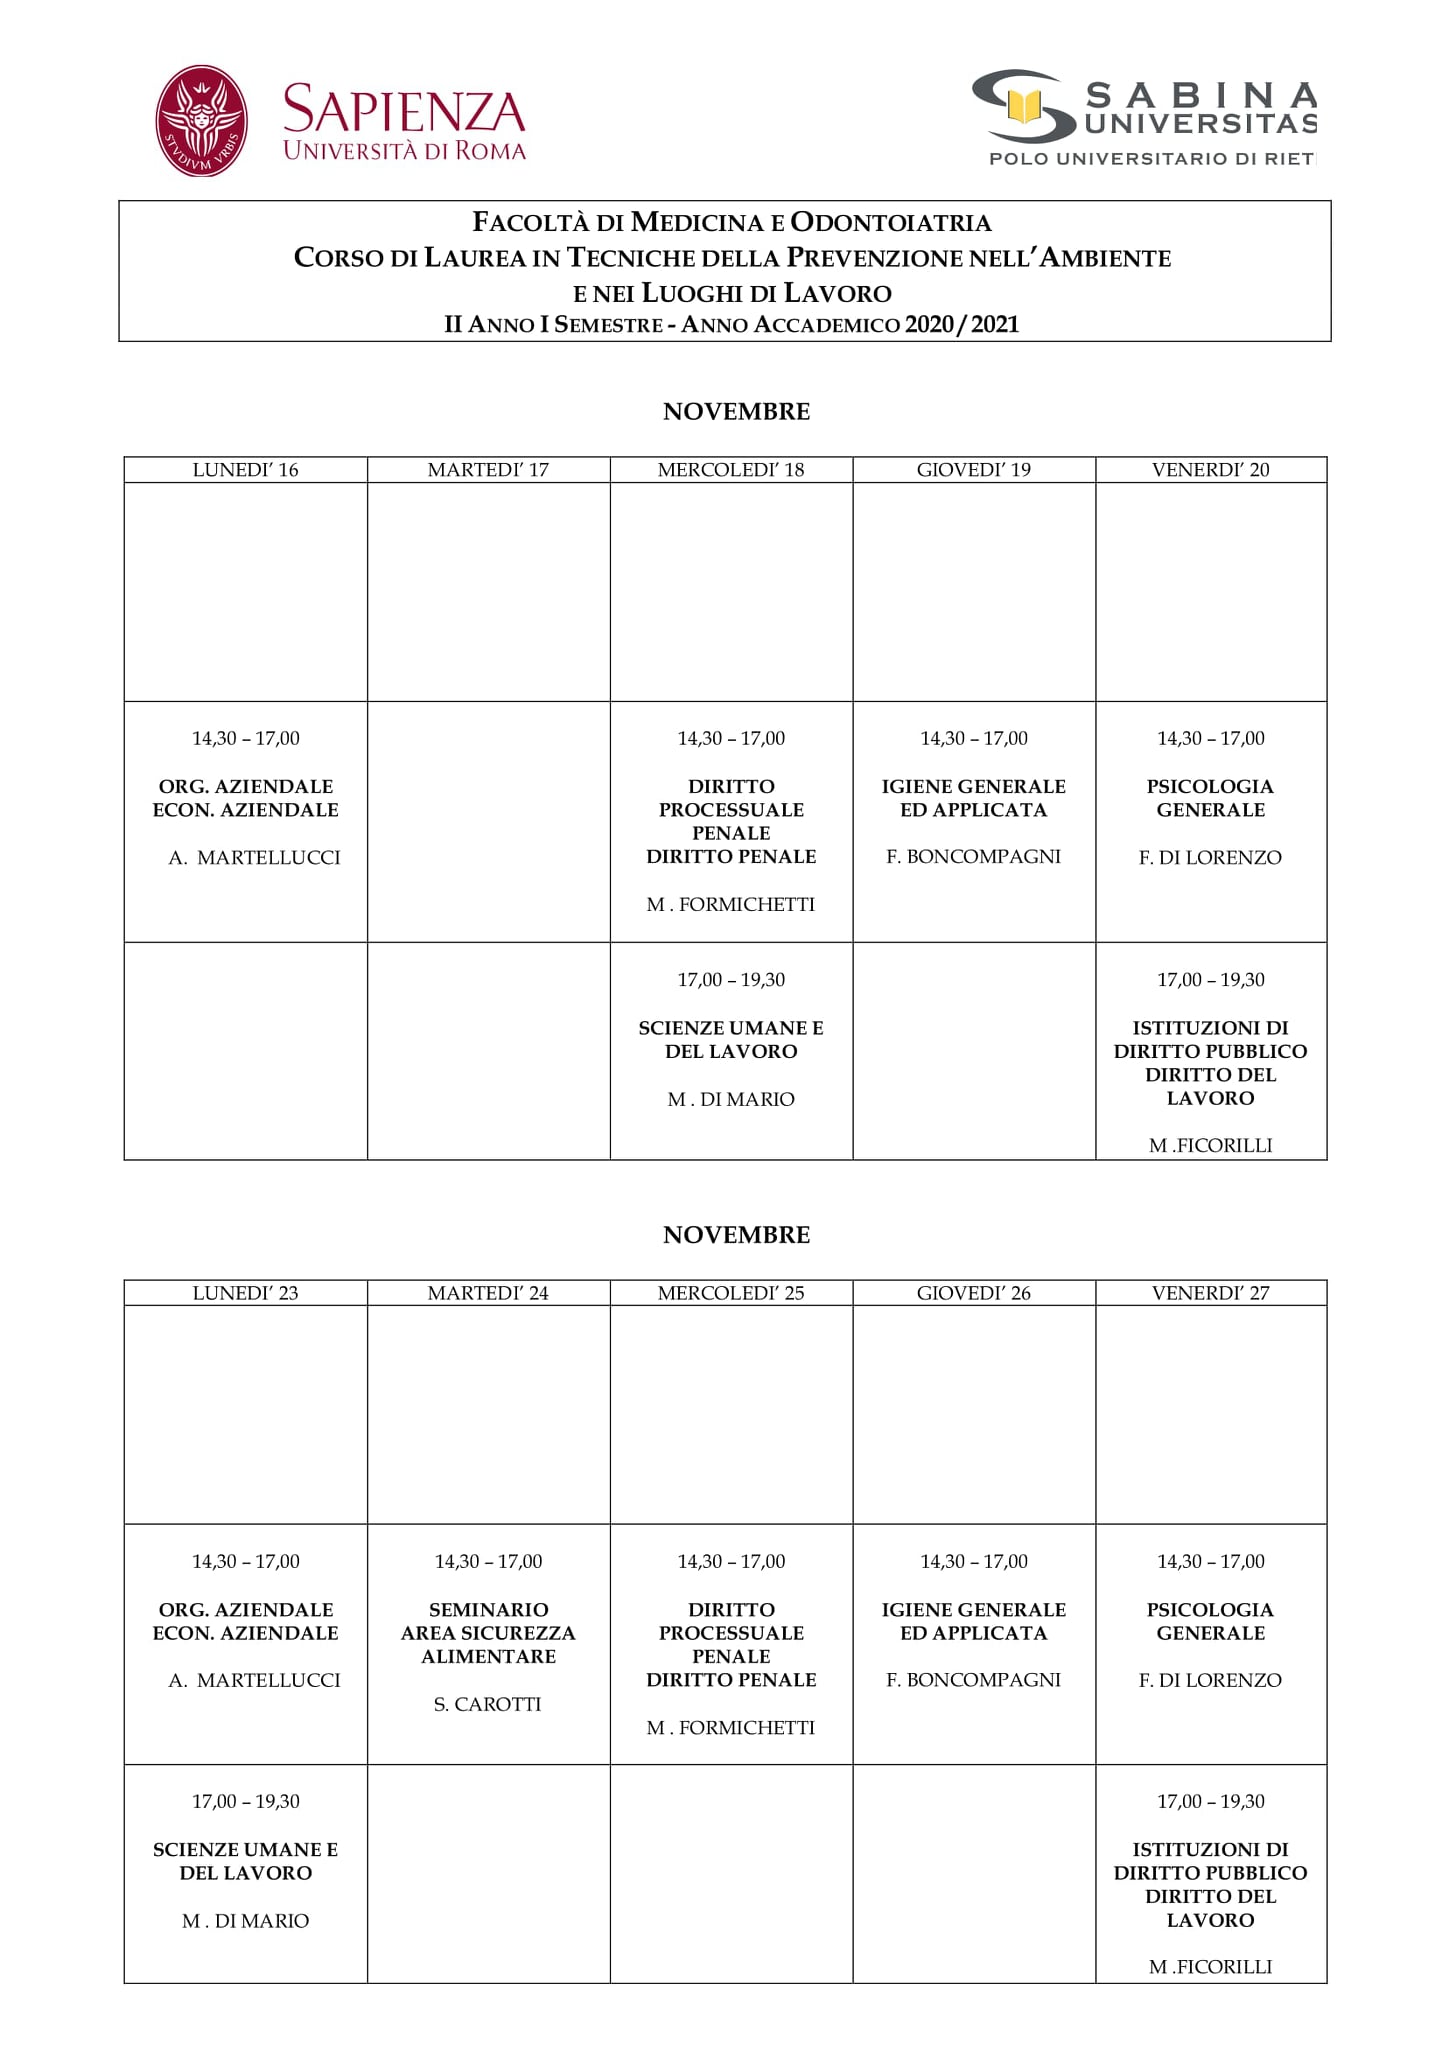 Tecniche della Prevenzione | Aggiornamento calendario lezioni dal 16/11/2020 al 27/11/2020